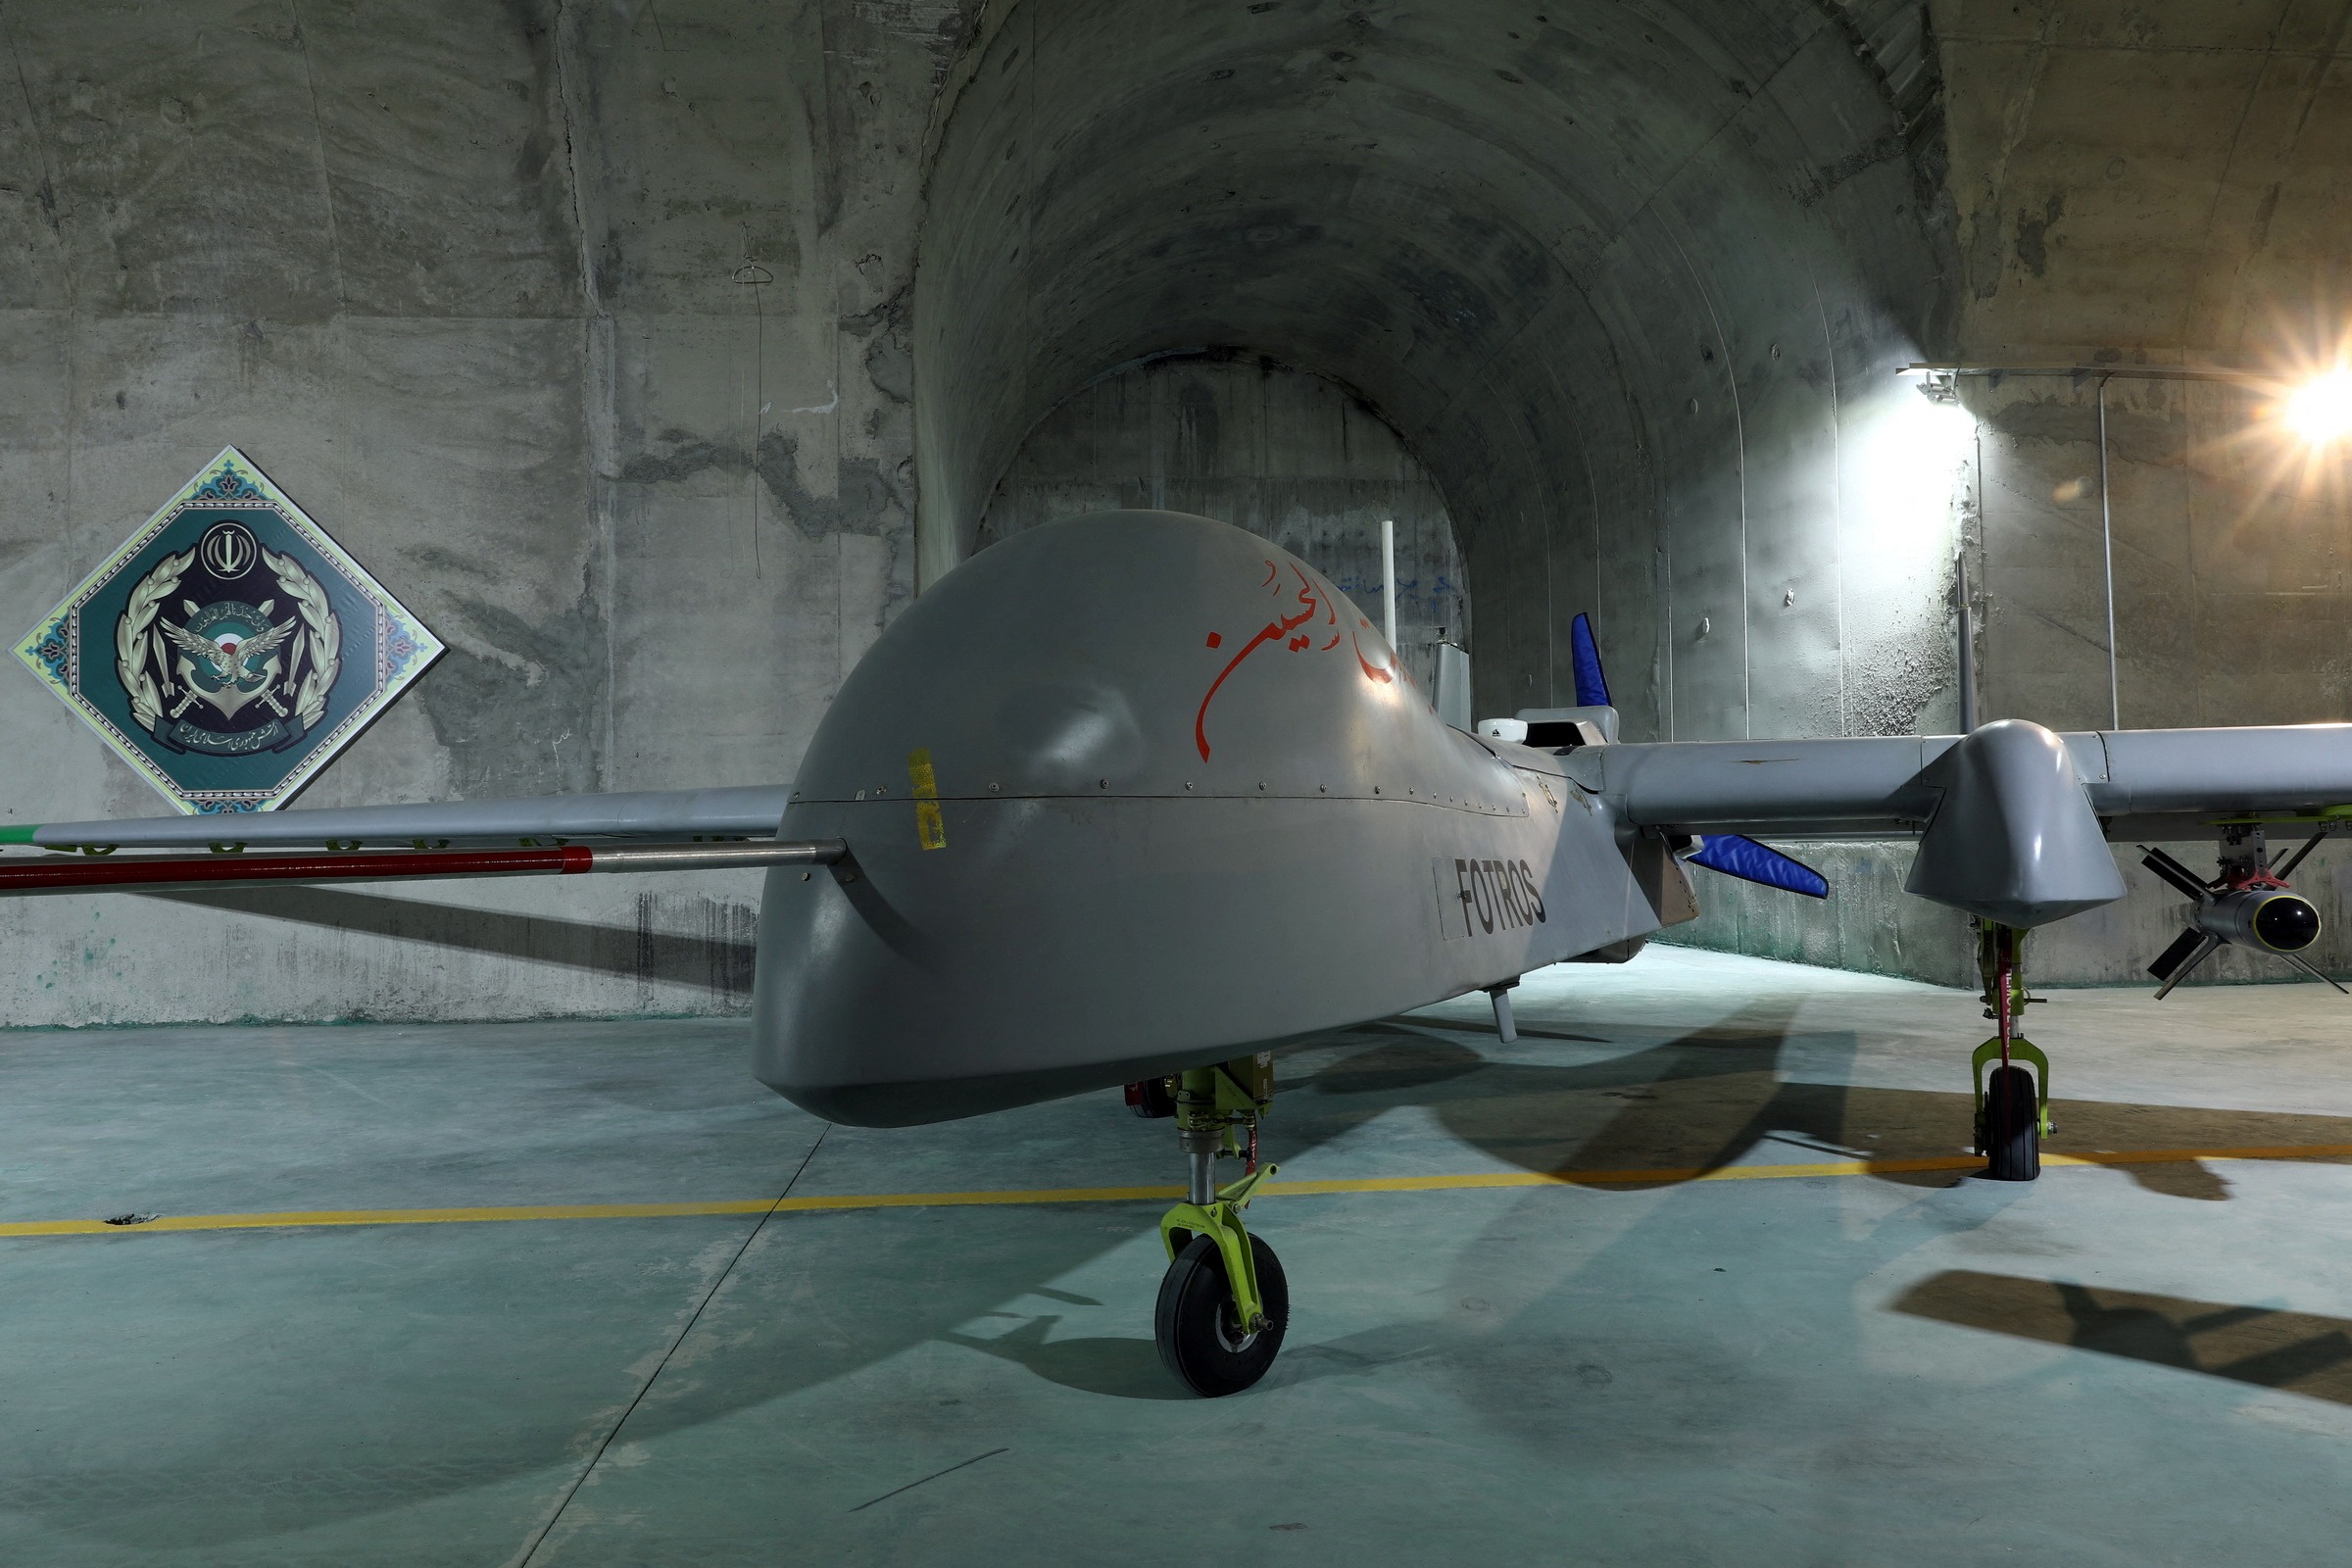 Η Ρωσία παρήγγειλε από το Ιράν εκατοντάδες drones – «καμικάζι» με βαλλιστικούς πυραύλους